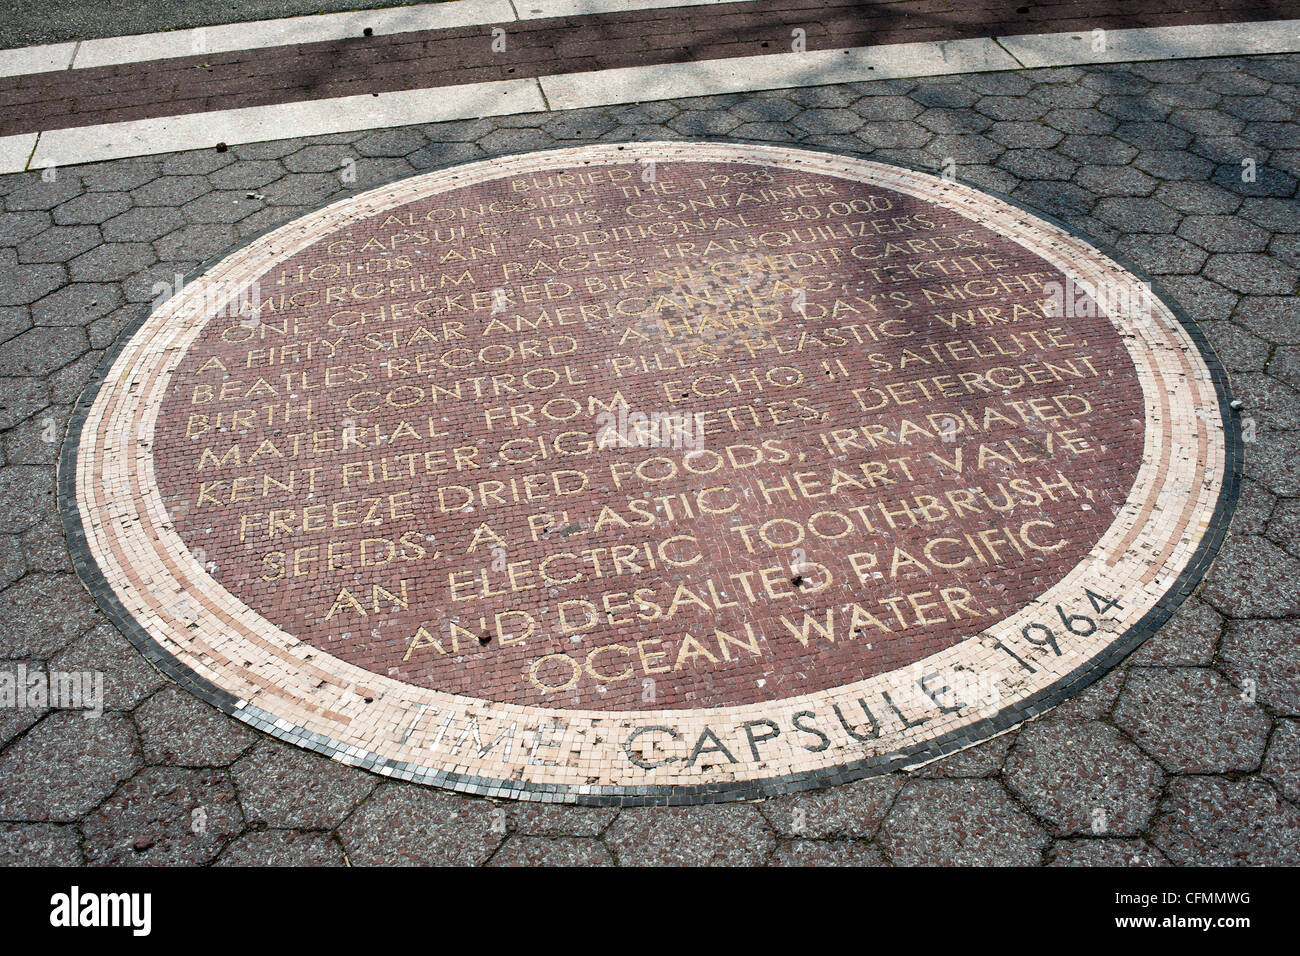 Ein Mosaik im Flushing Meadows Park in Queens in New York erinnert an die Weltausstellung Time capsule Stockfoto